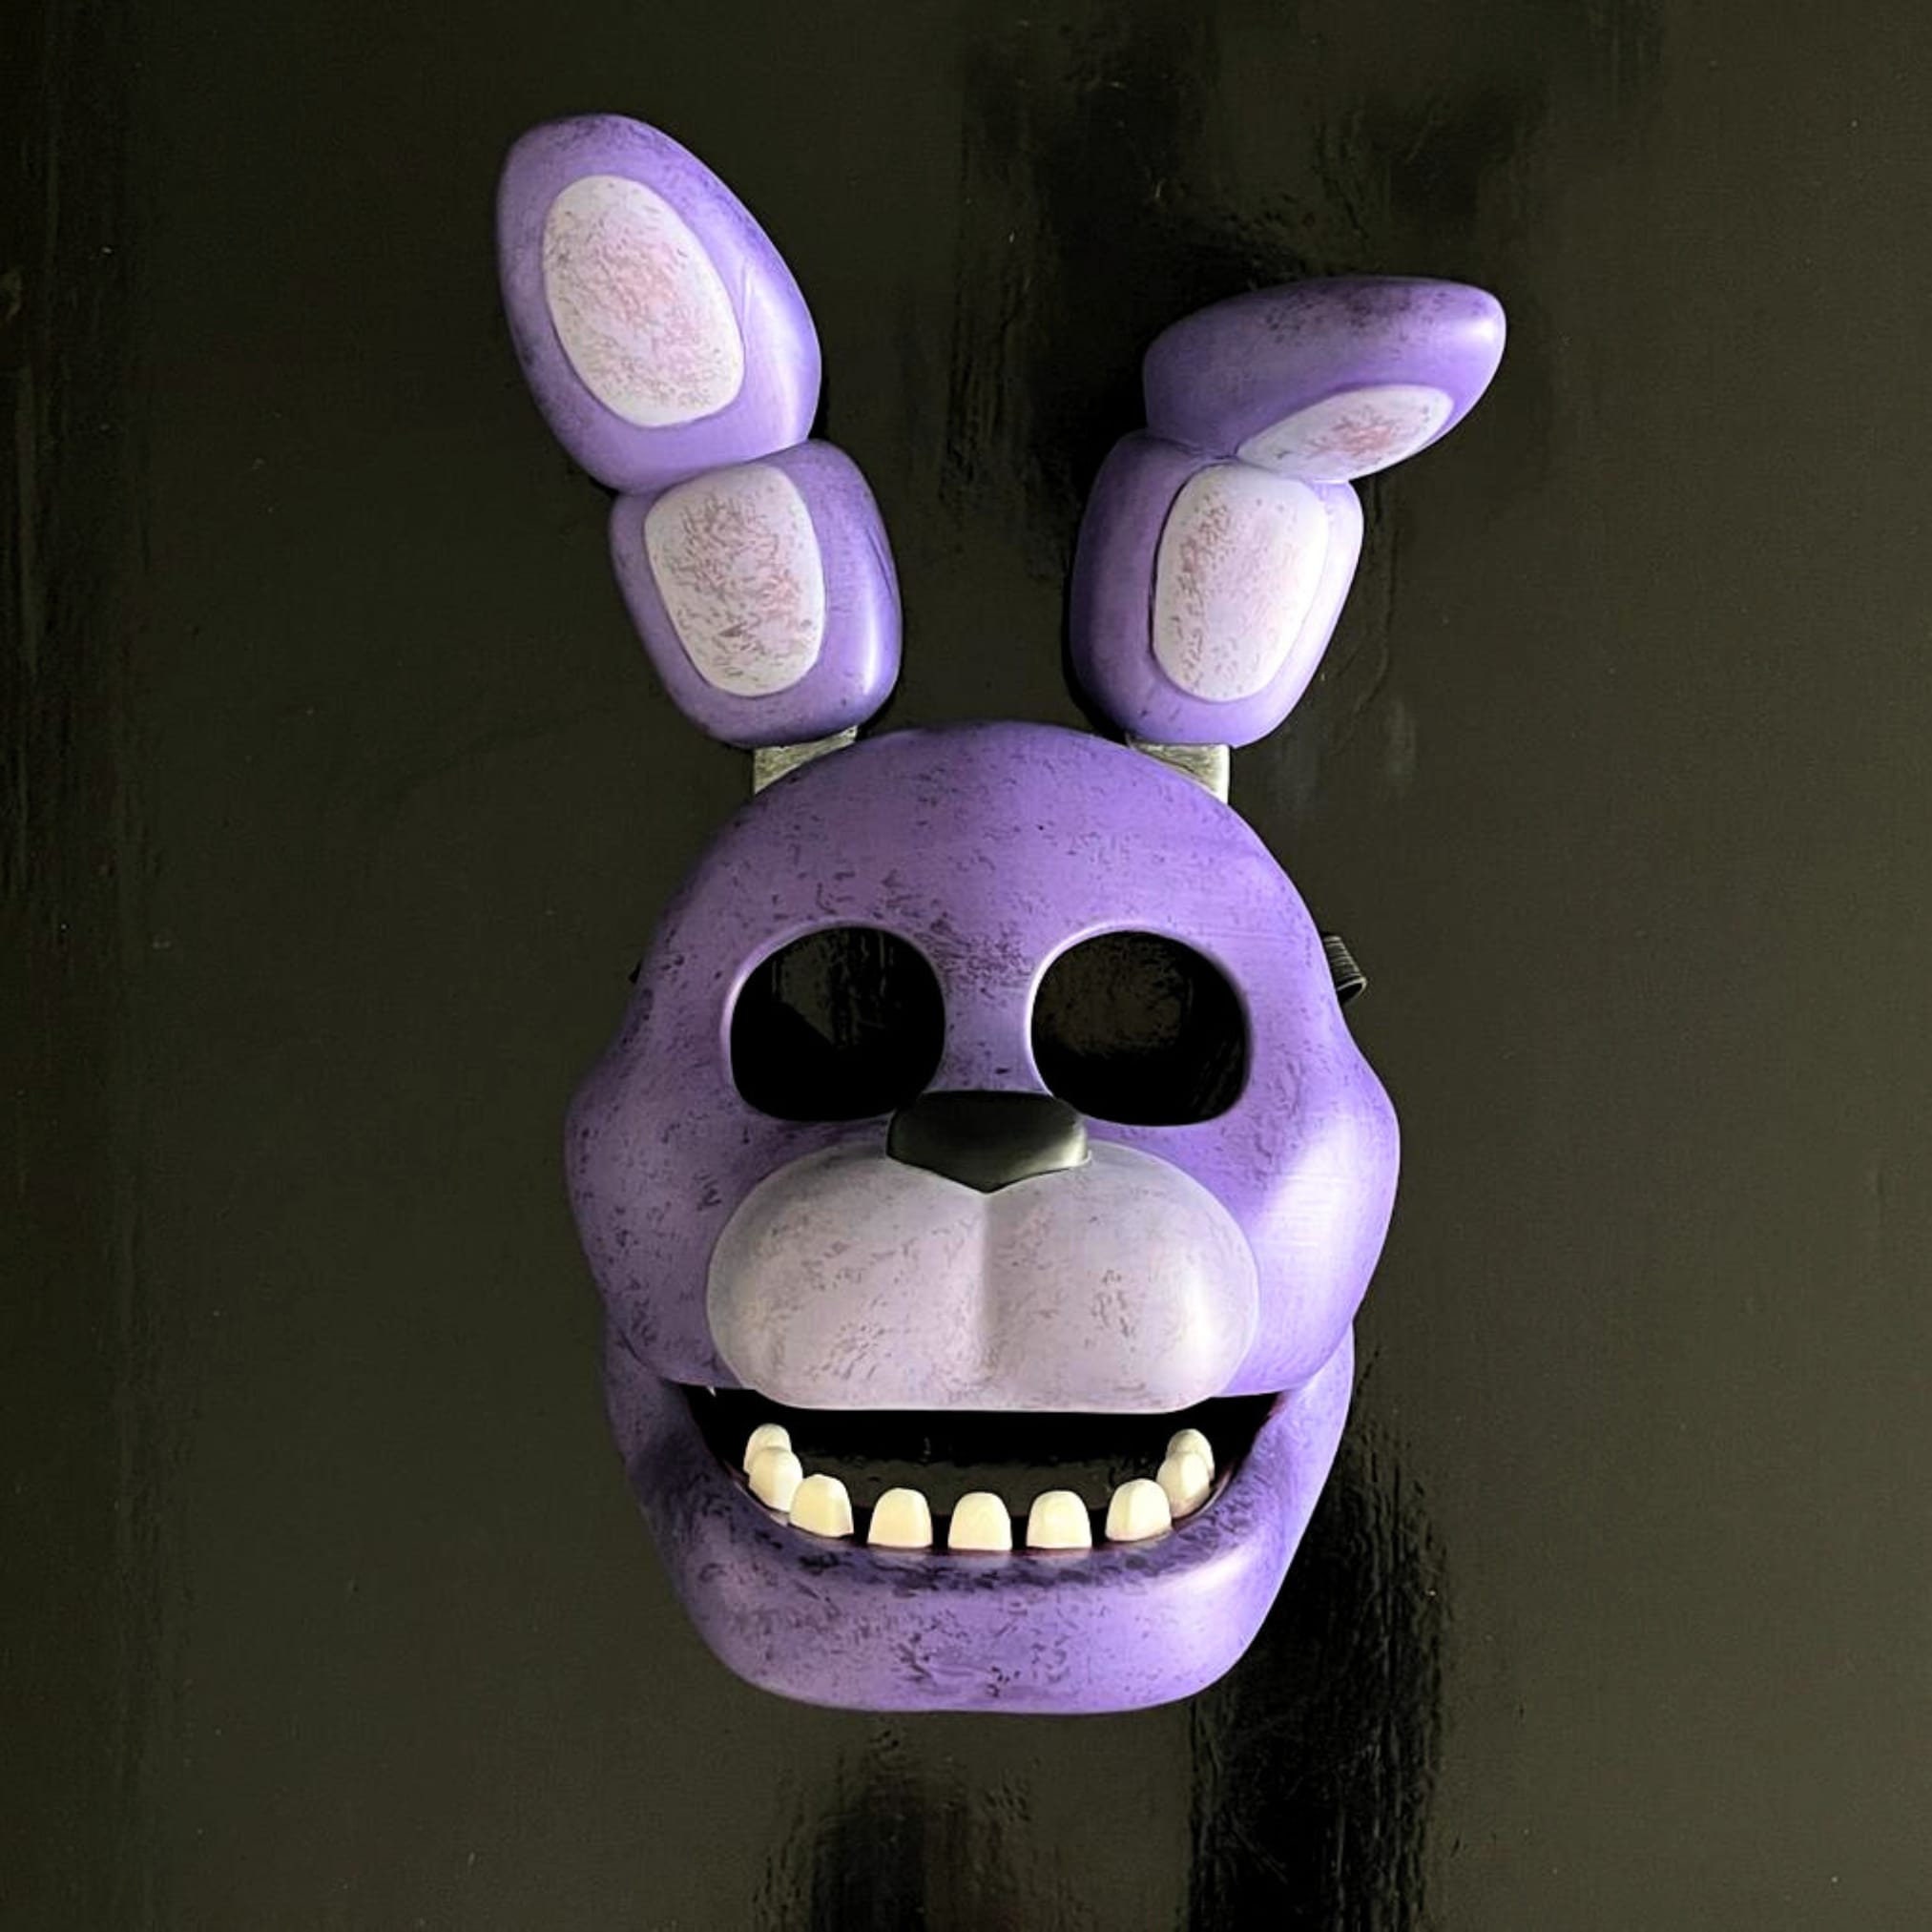 Spring Bonnie Mask (FNAF / Five Nights At Freddy’s)